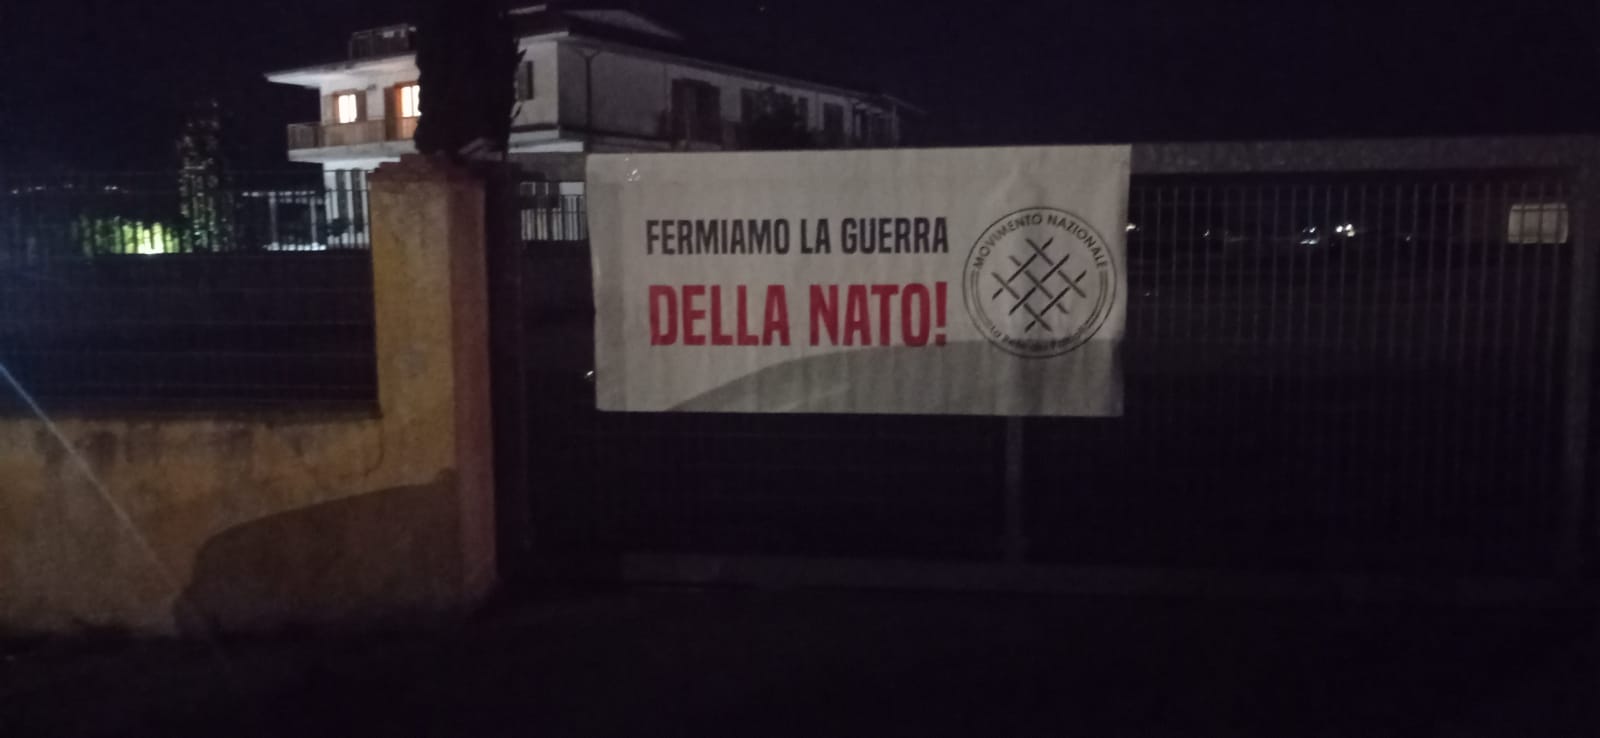 Salerno: Movimento Nazionale – la Rete dei Patrioti “Fermare guerra Nato”